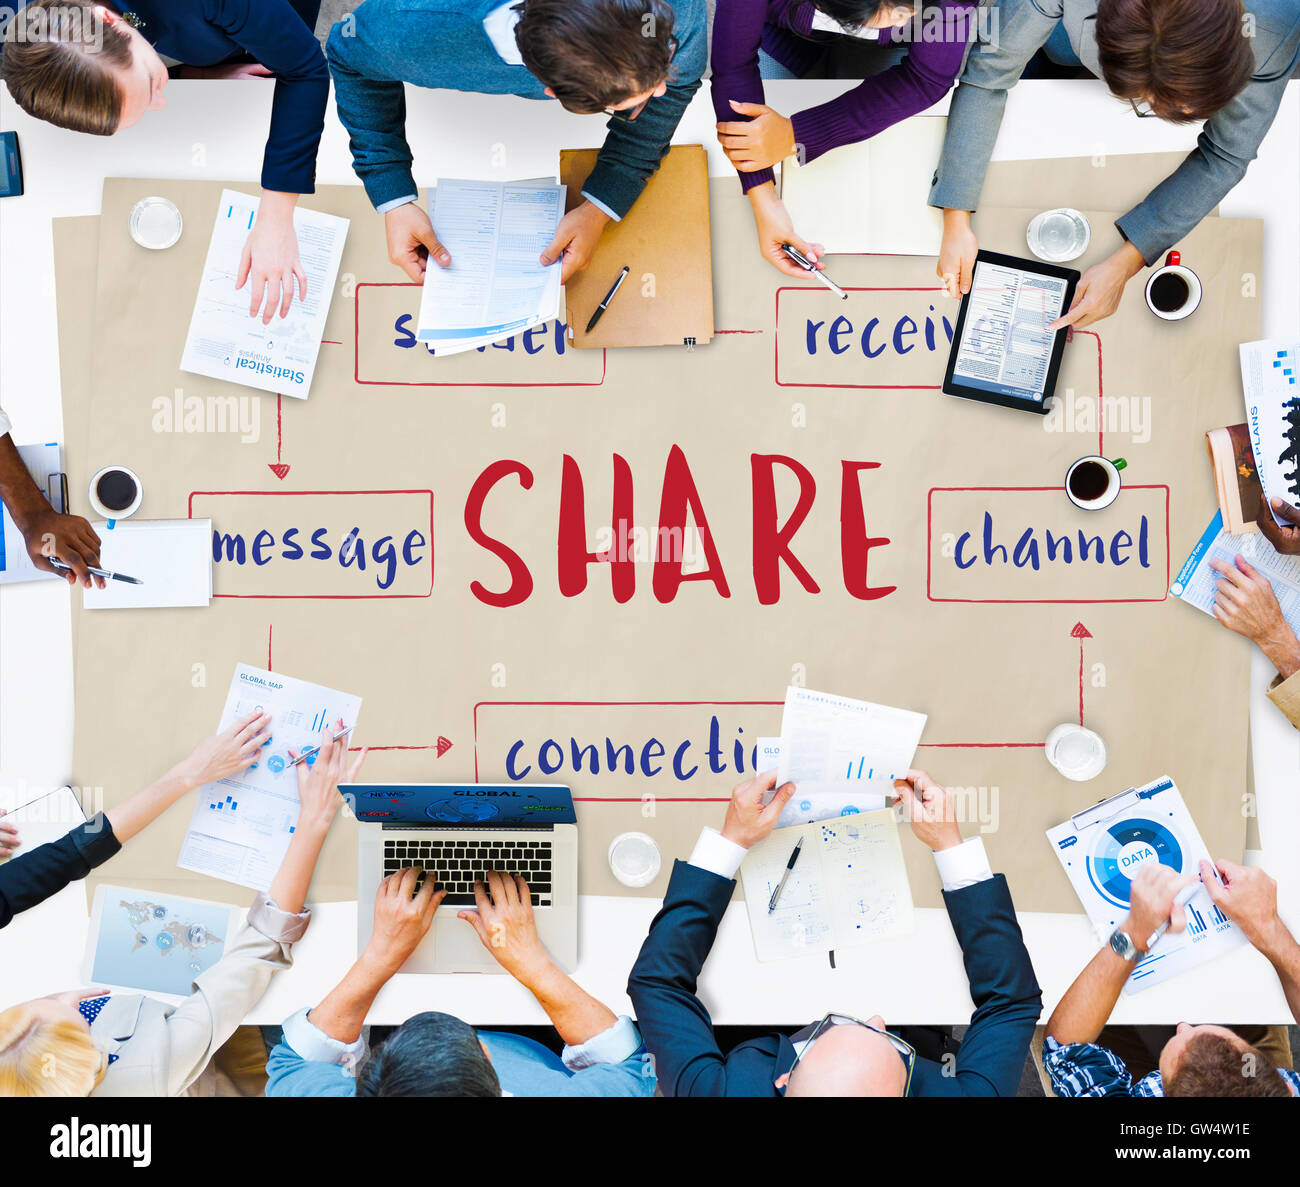 Social-Media-Online-Verbindung-Konzept Stockfoto